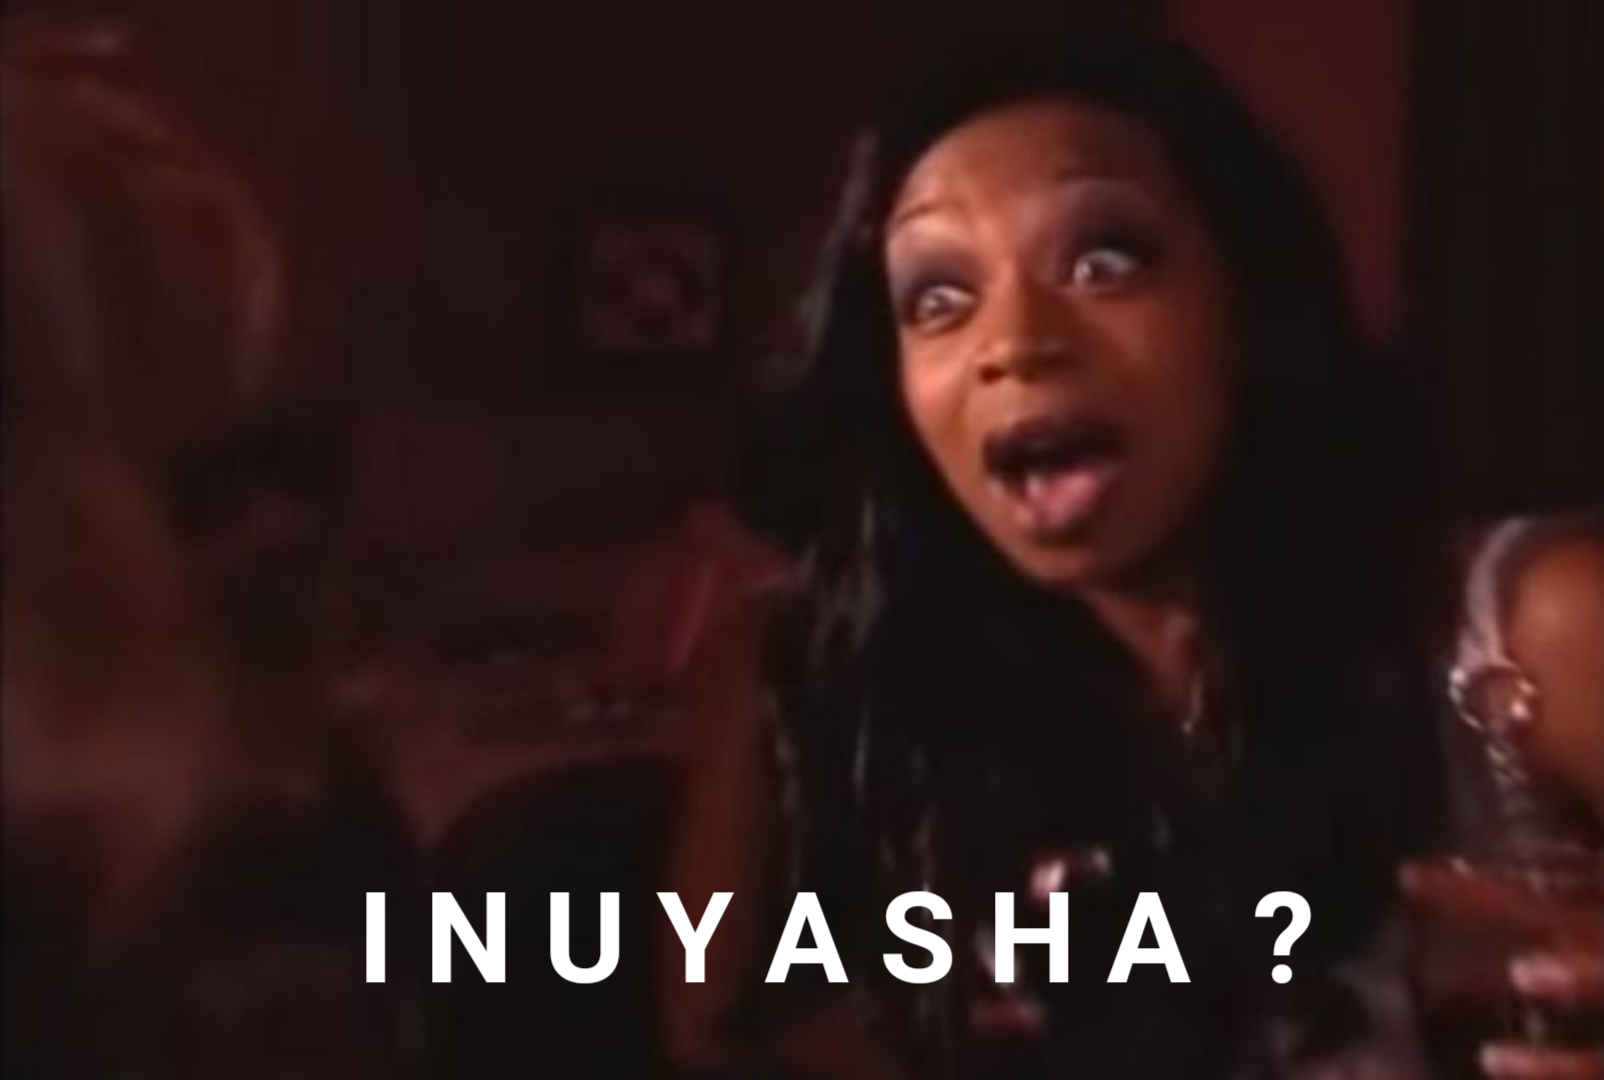 XXX thisismytrashok:me seeing inuyasha trending: photo